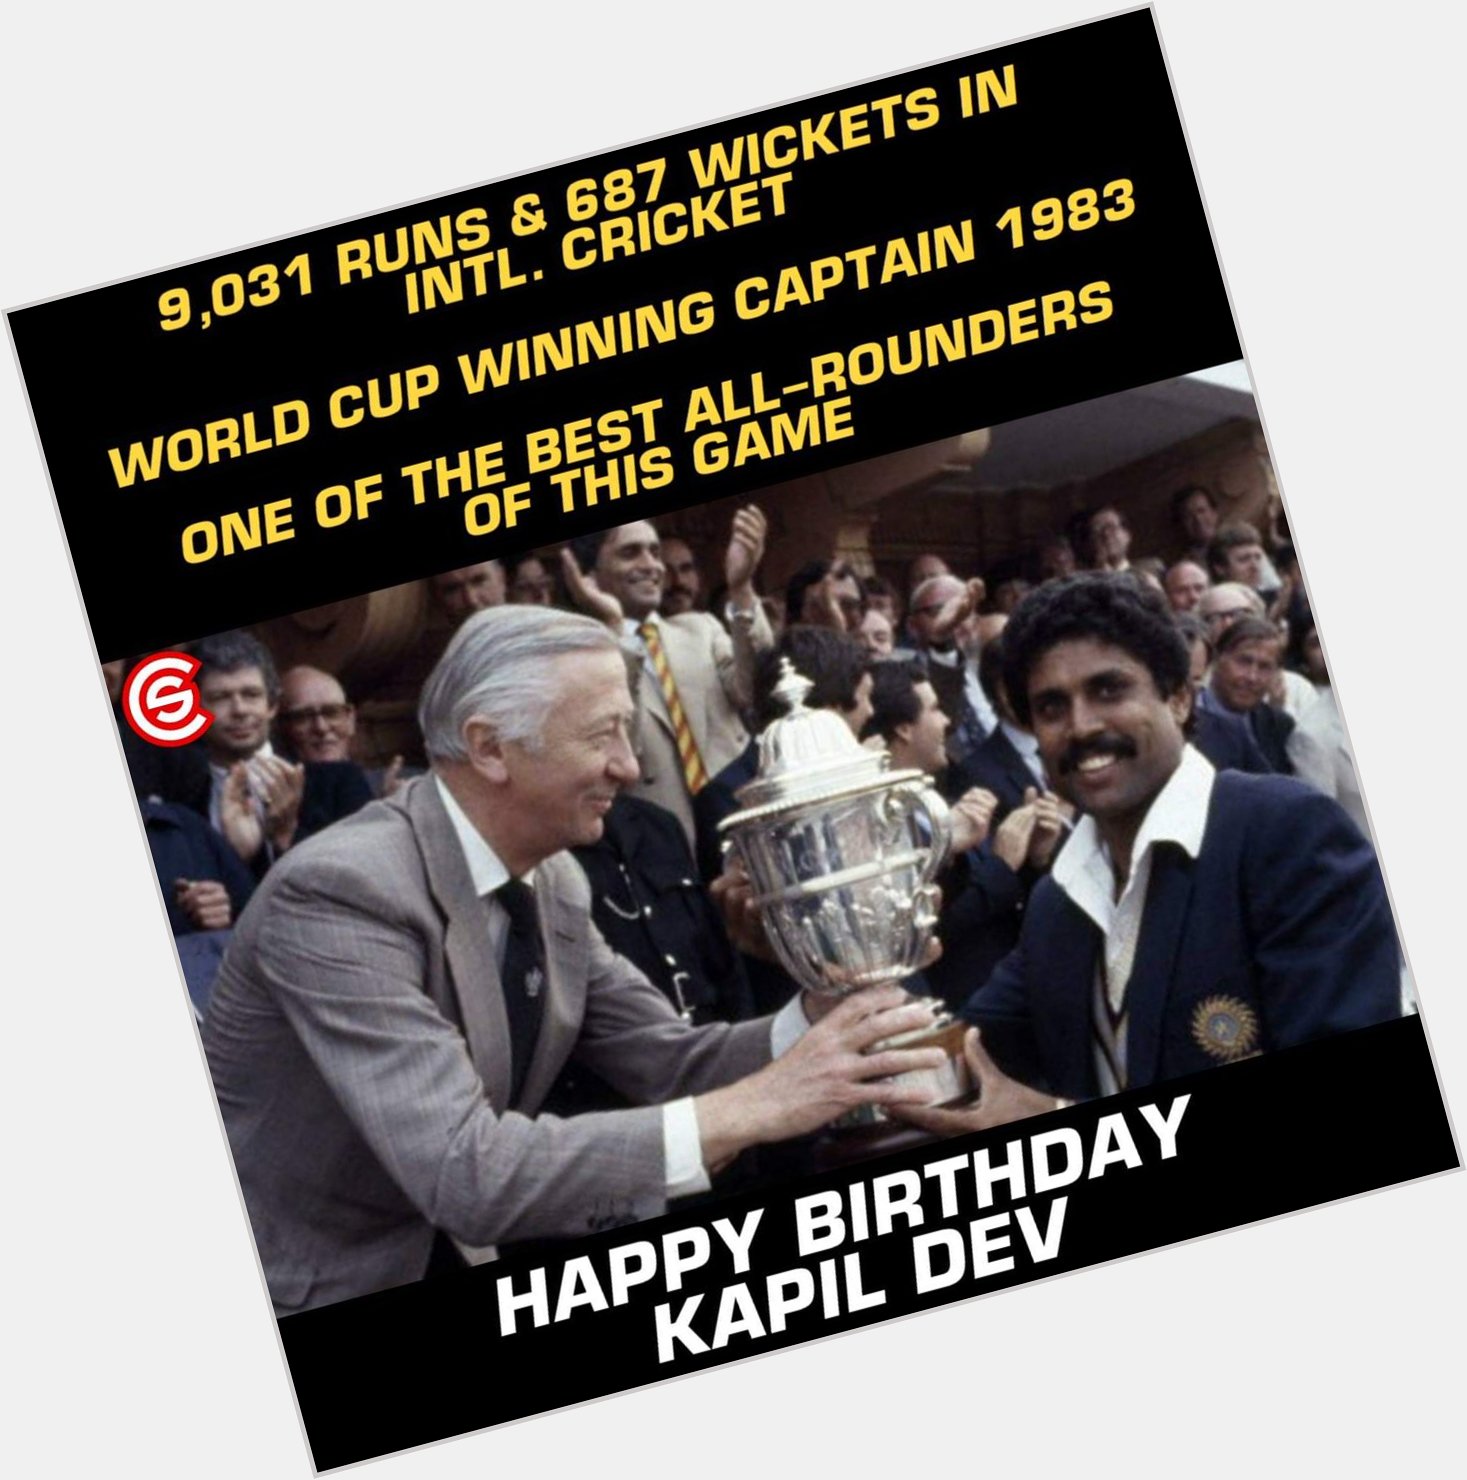 Happy Birthday to Kapil Dev!! 